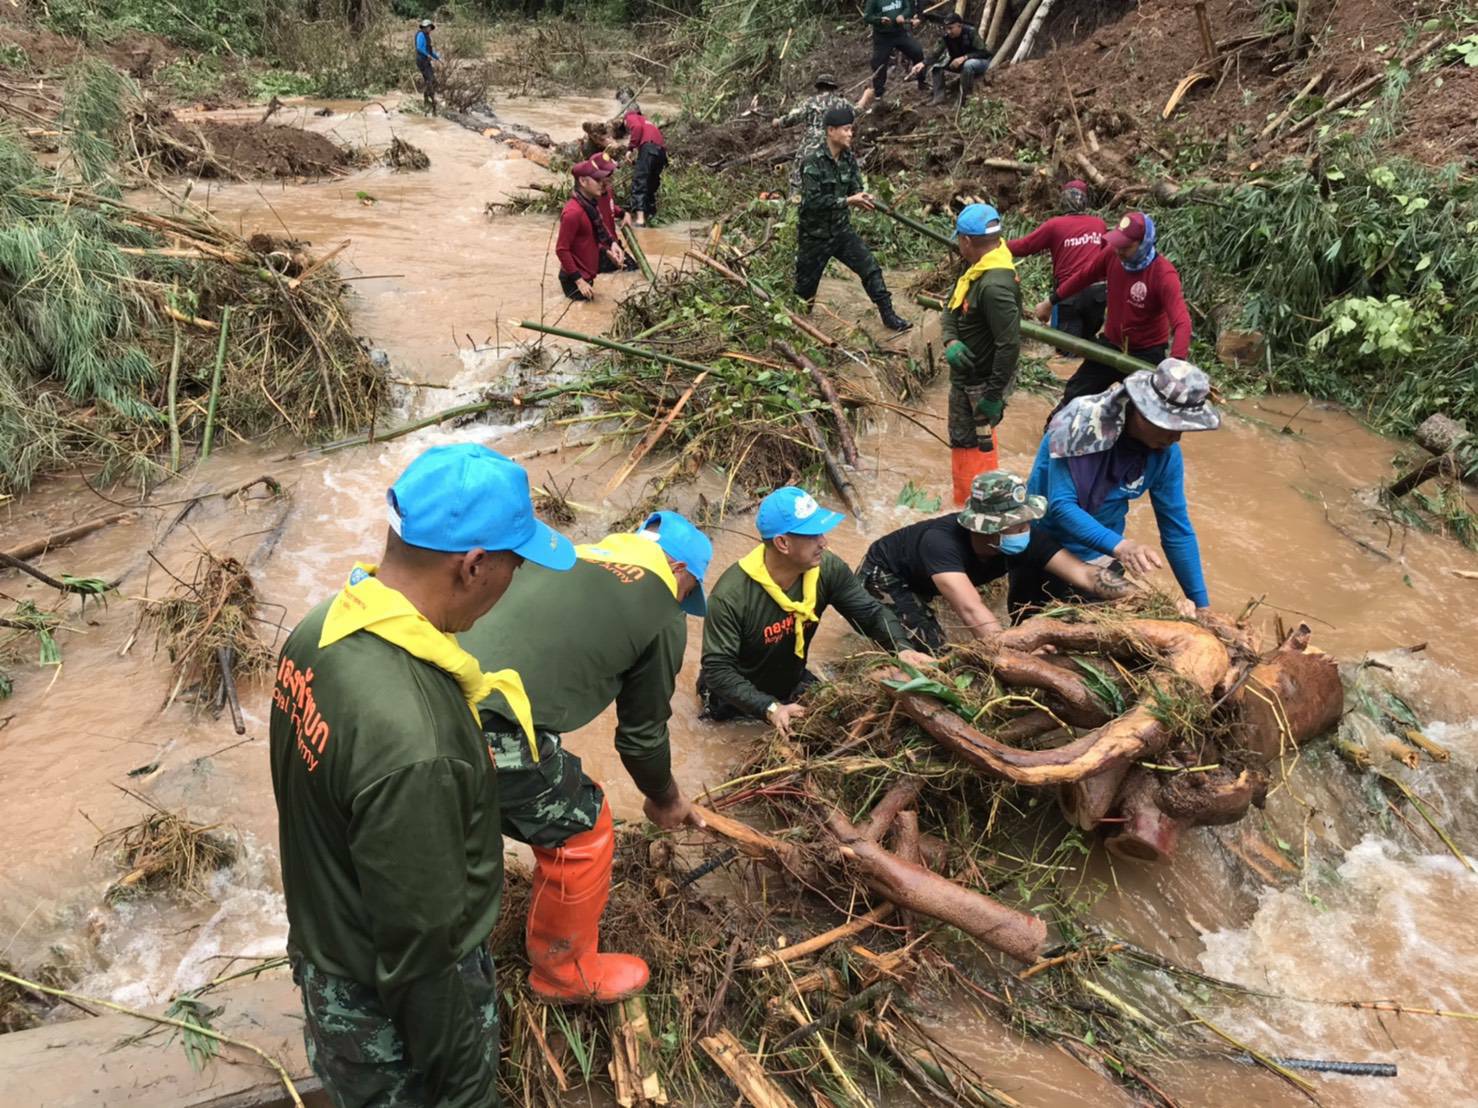 ศูนย์บรรเทาสาธารณภัย กองทัพภาคที่ 3 สรุปผลการการช่วยเหลือผู้ประสบภัยจากอิทธิพลจากพายุซินลากู ในห้วงวันที่ 2 - 4 สิงหาคม2563 ทำให้เกิดฝนตกหนัก น้ำป่าไหลหลากในภาคเหนือมีพื้นที่ได้รับผลกระทบ รวม 8 จังหวัด 32 อำเภอ และ 82 ตำบล